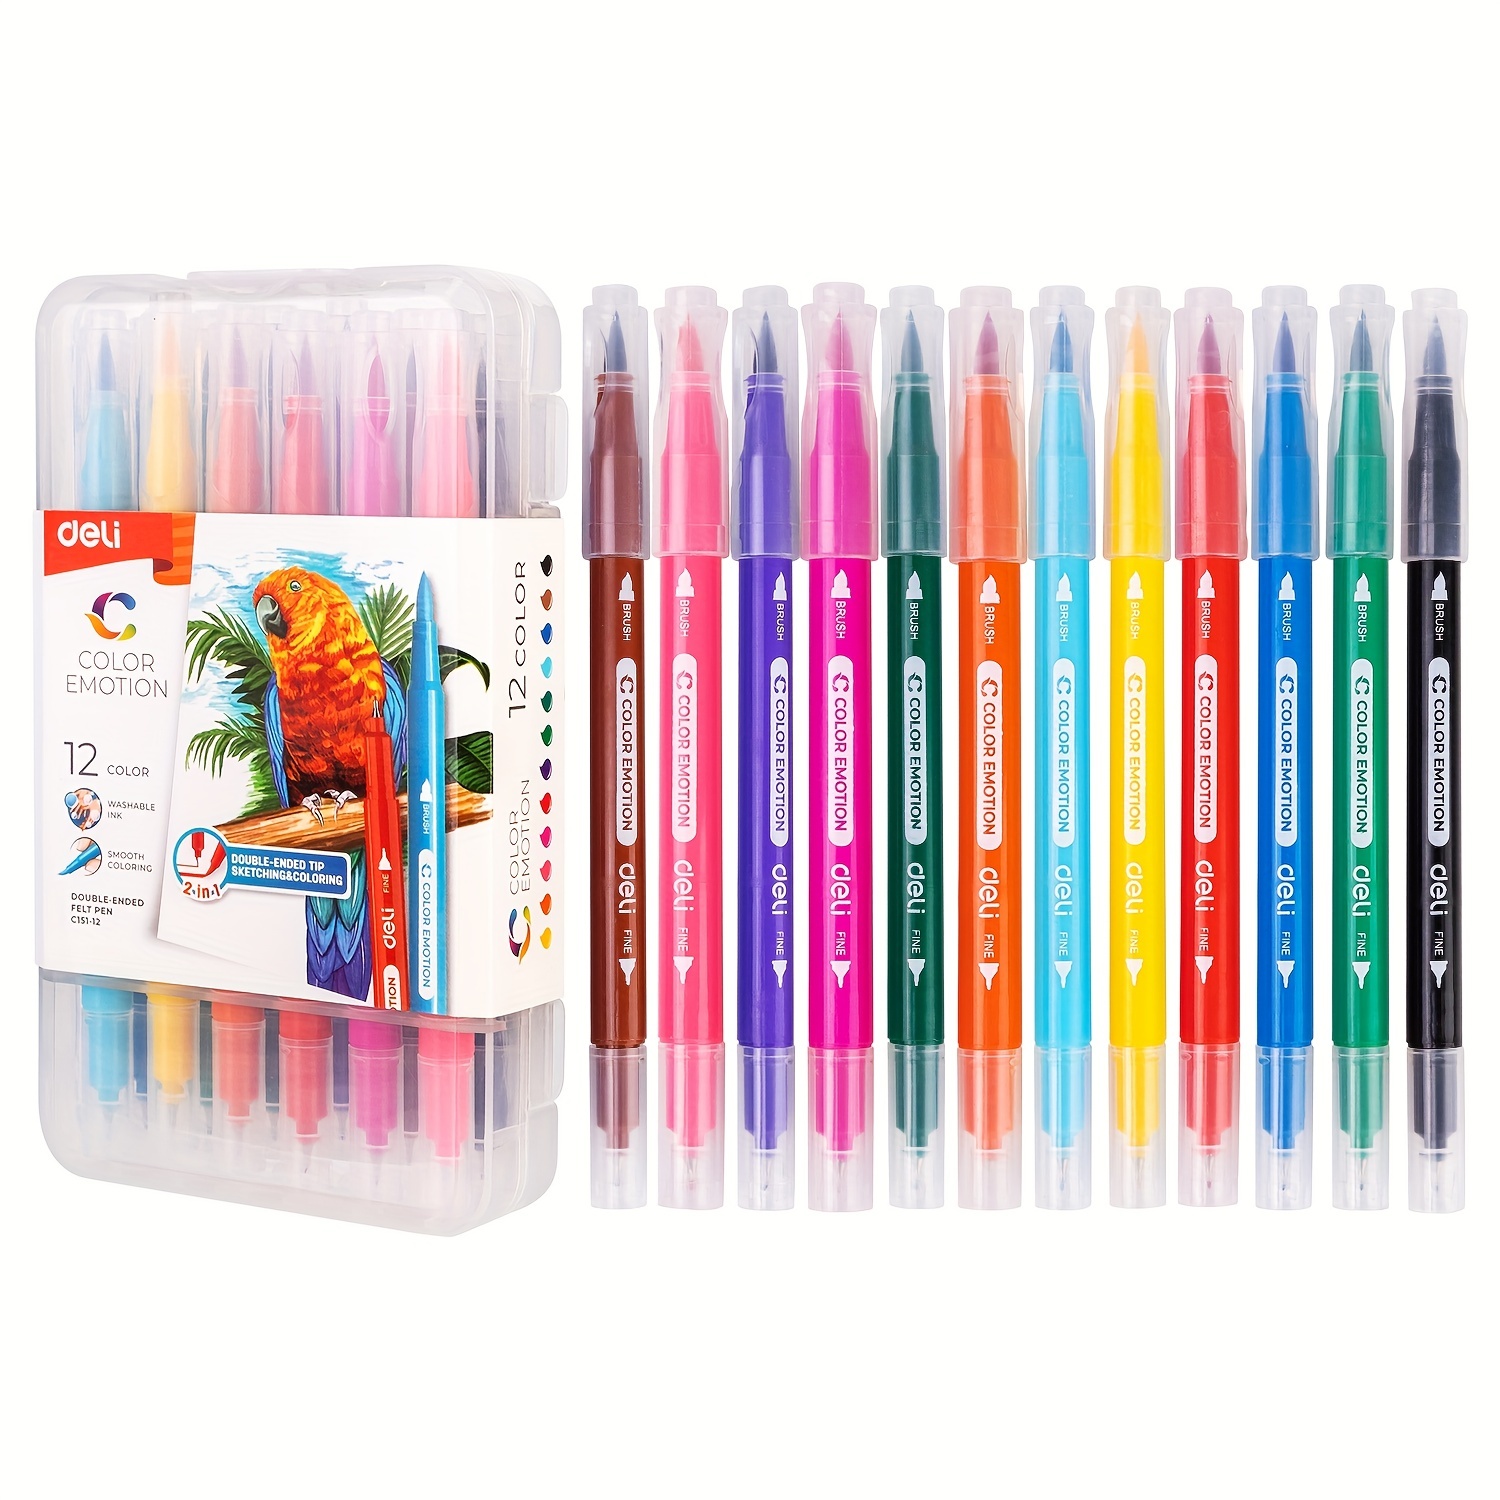 Deli Felt tip pen set 12/18/24 Color Washable felt sketch marker